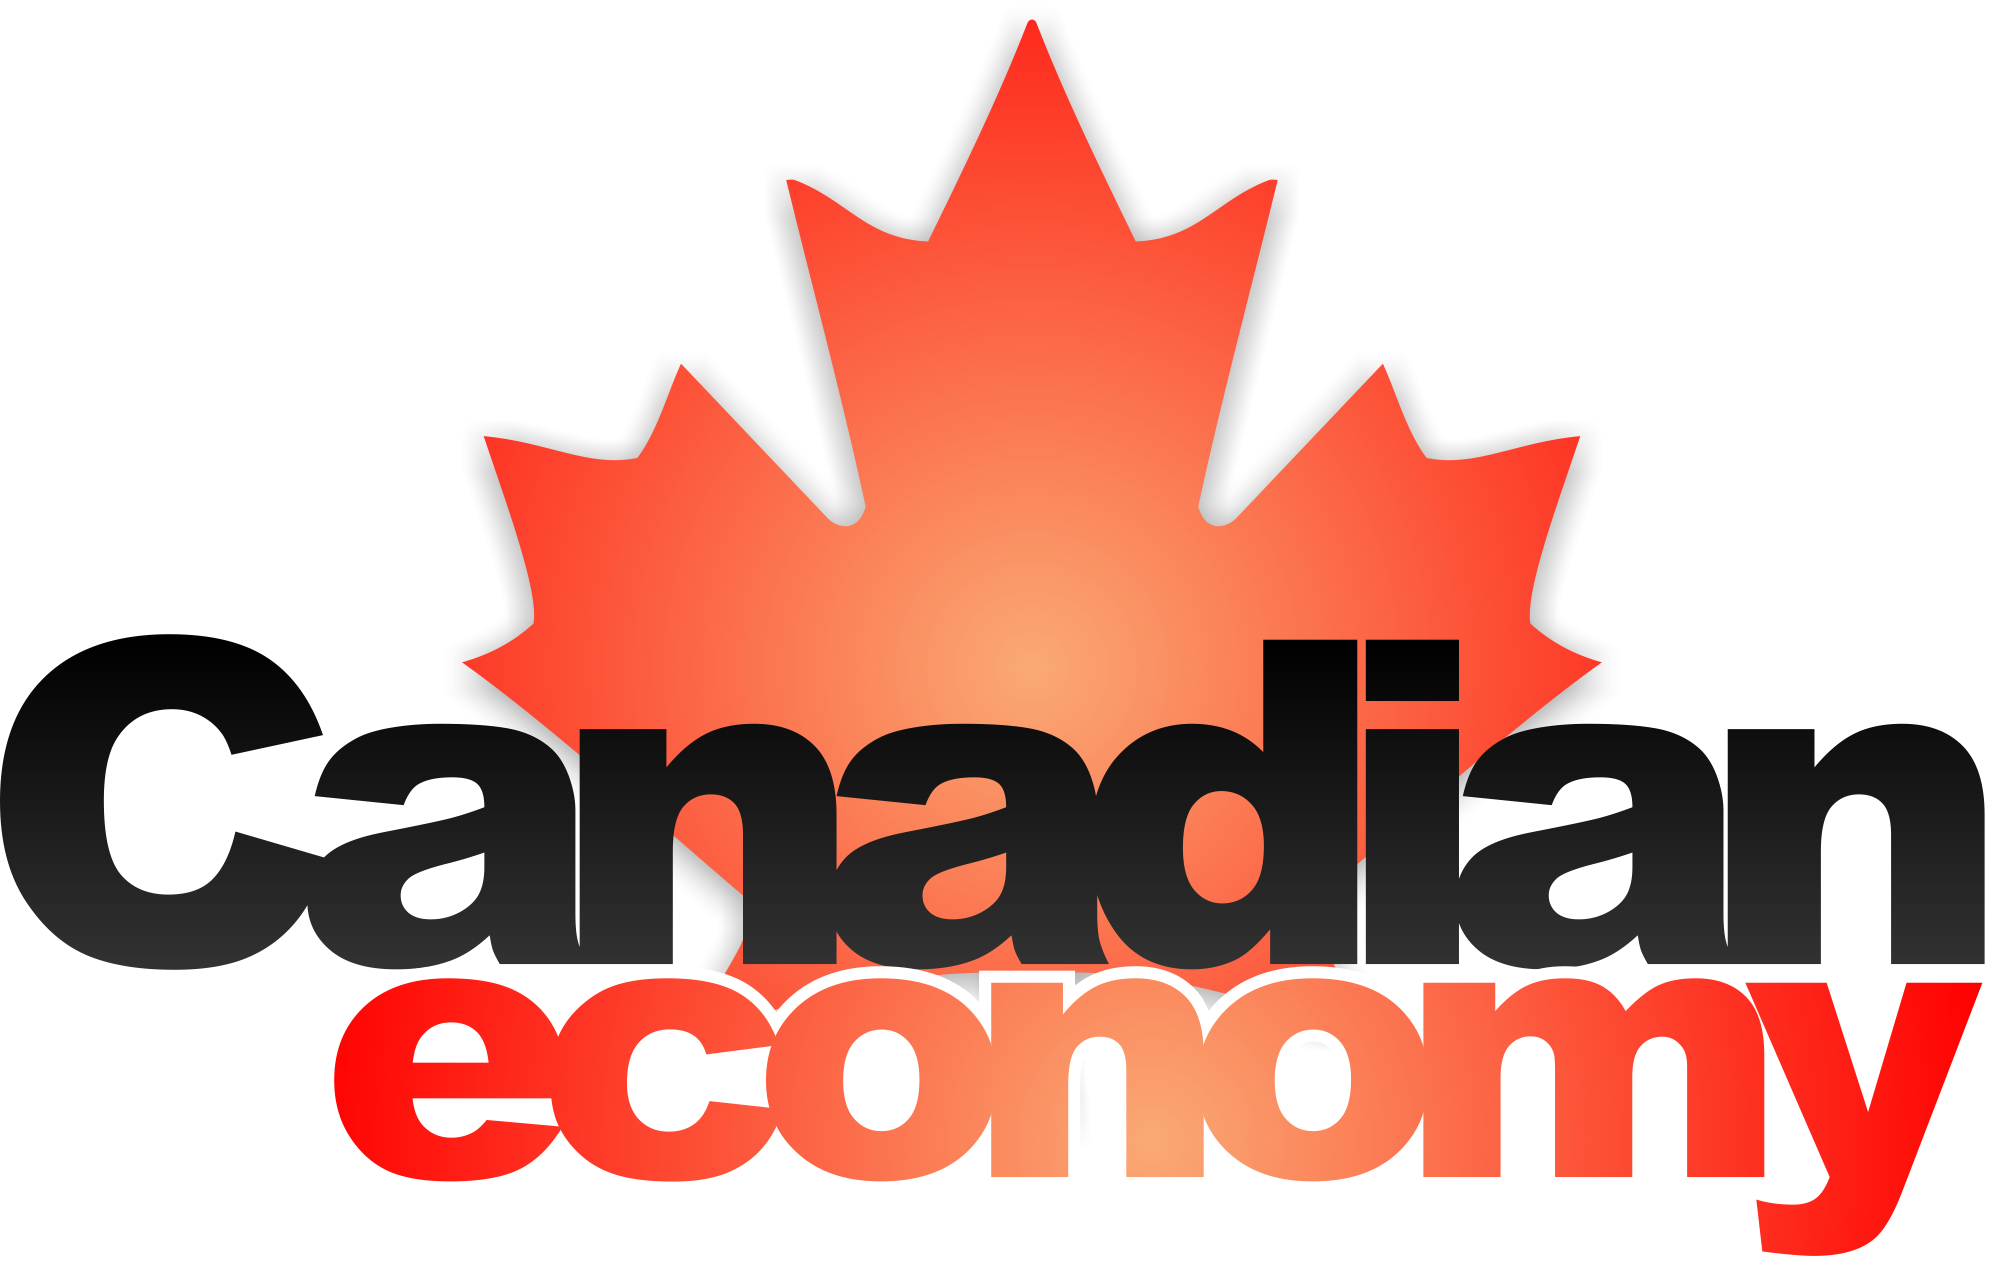 canadian-economy